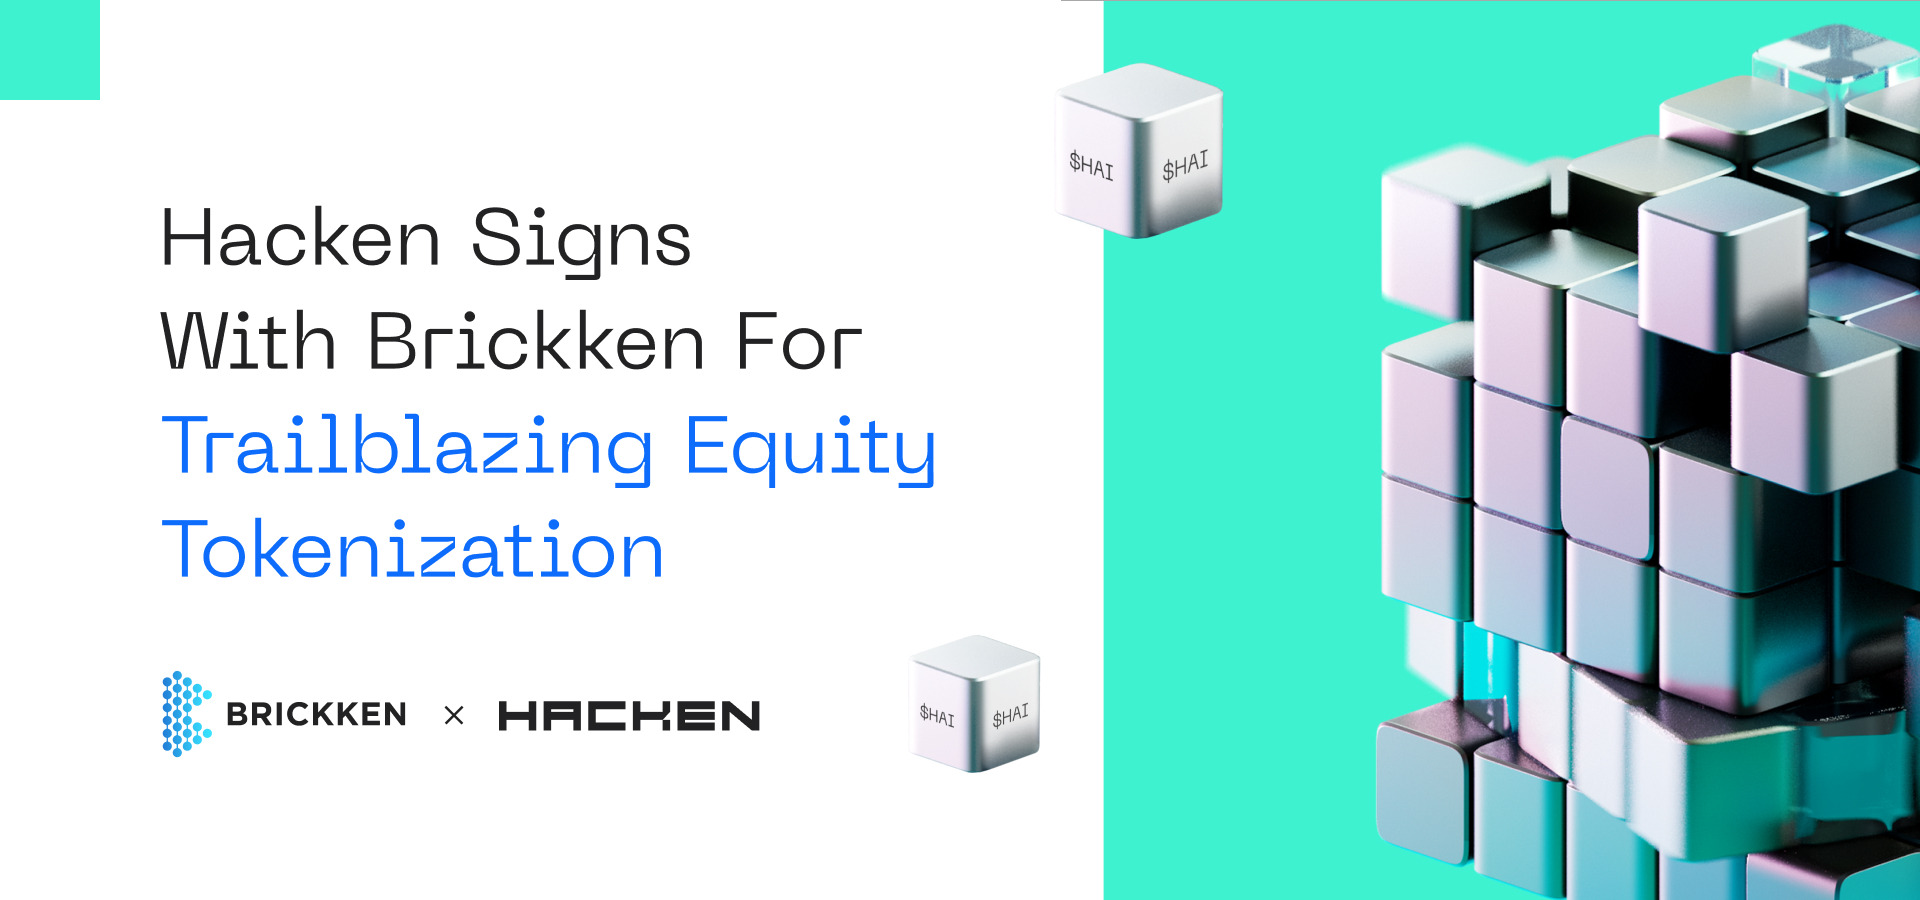 Hacken Signs with Brickken for Trailblazing Equity Tokenization